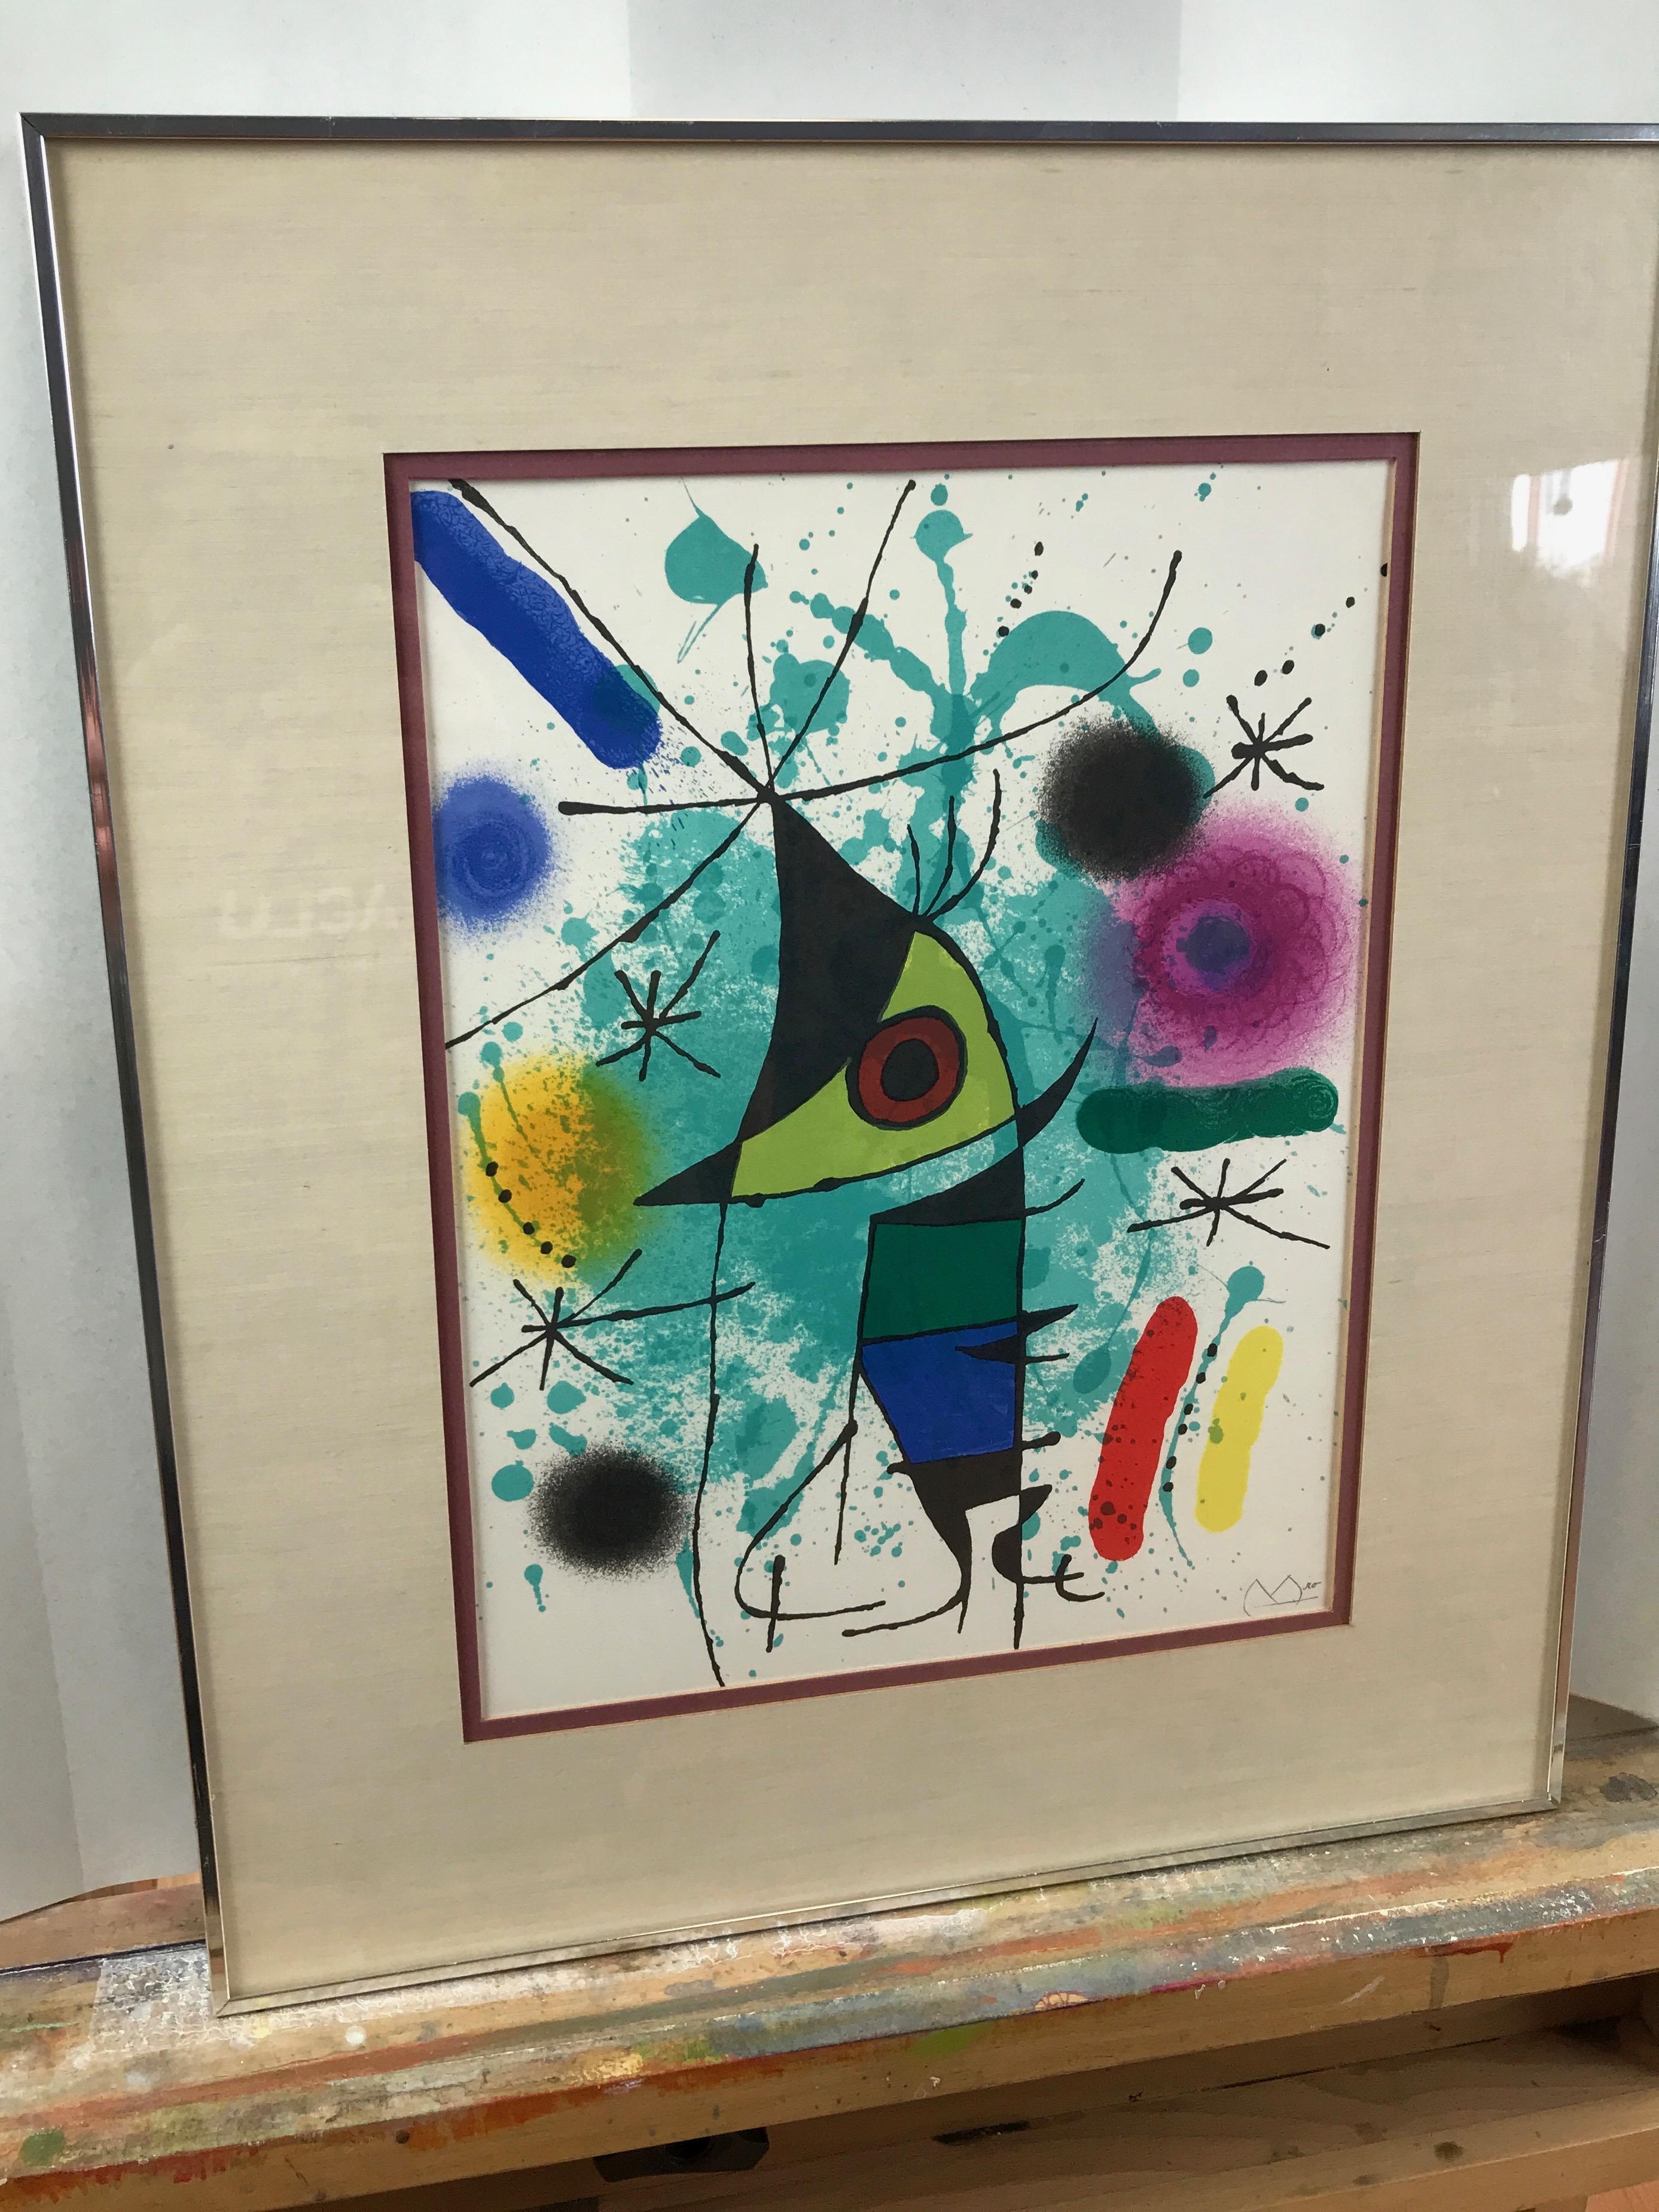 American Joan Miró “Le Chanteur, ou Le Poisson Chantant” Framed Lithograph, Signed, 1972